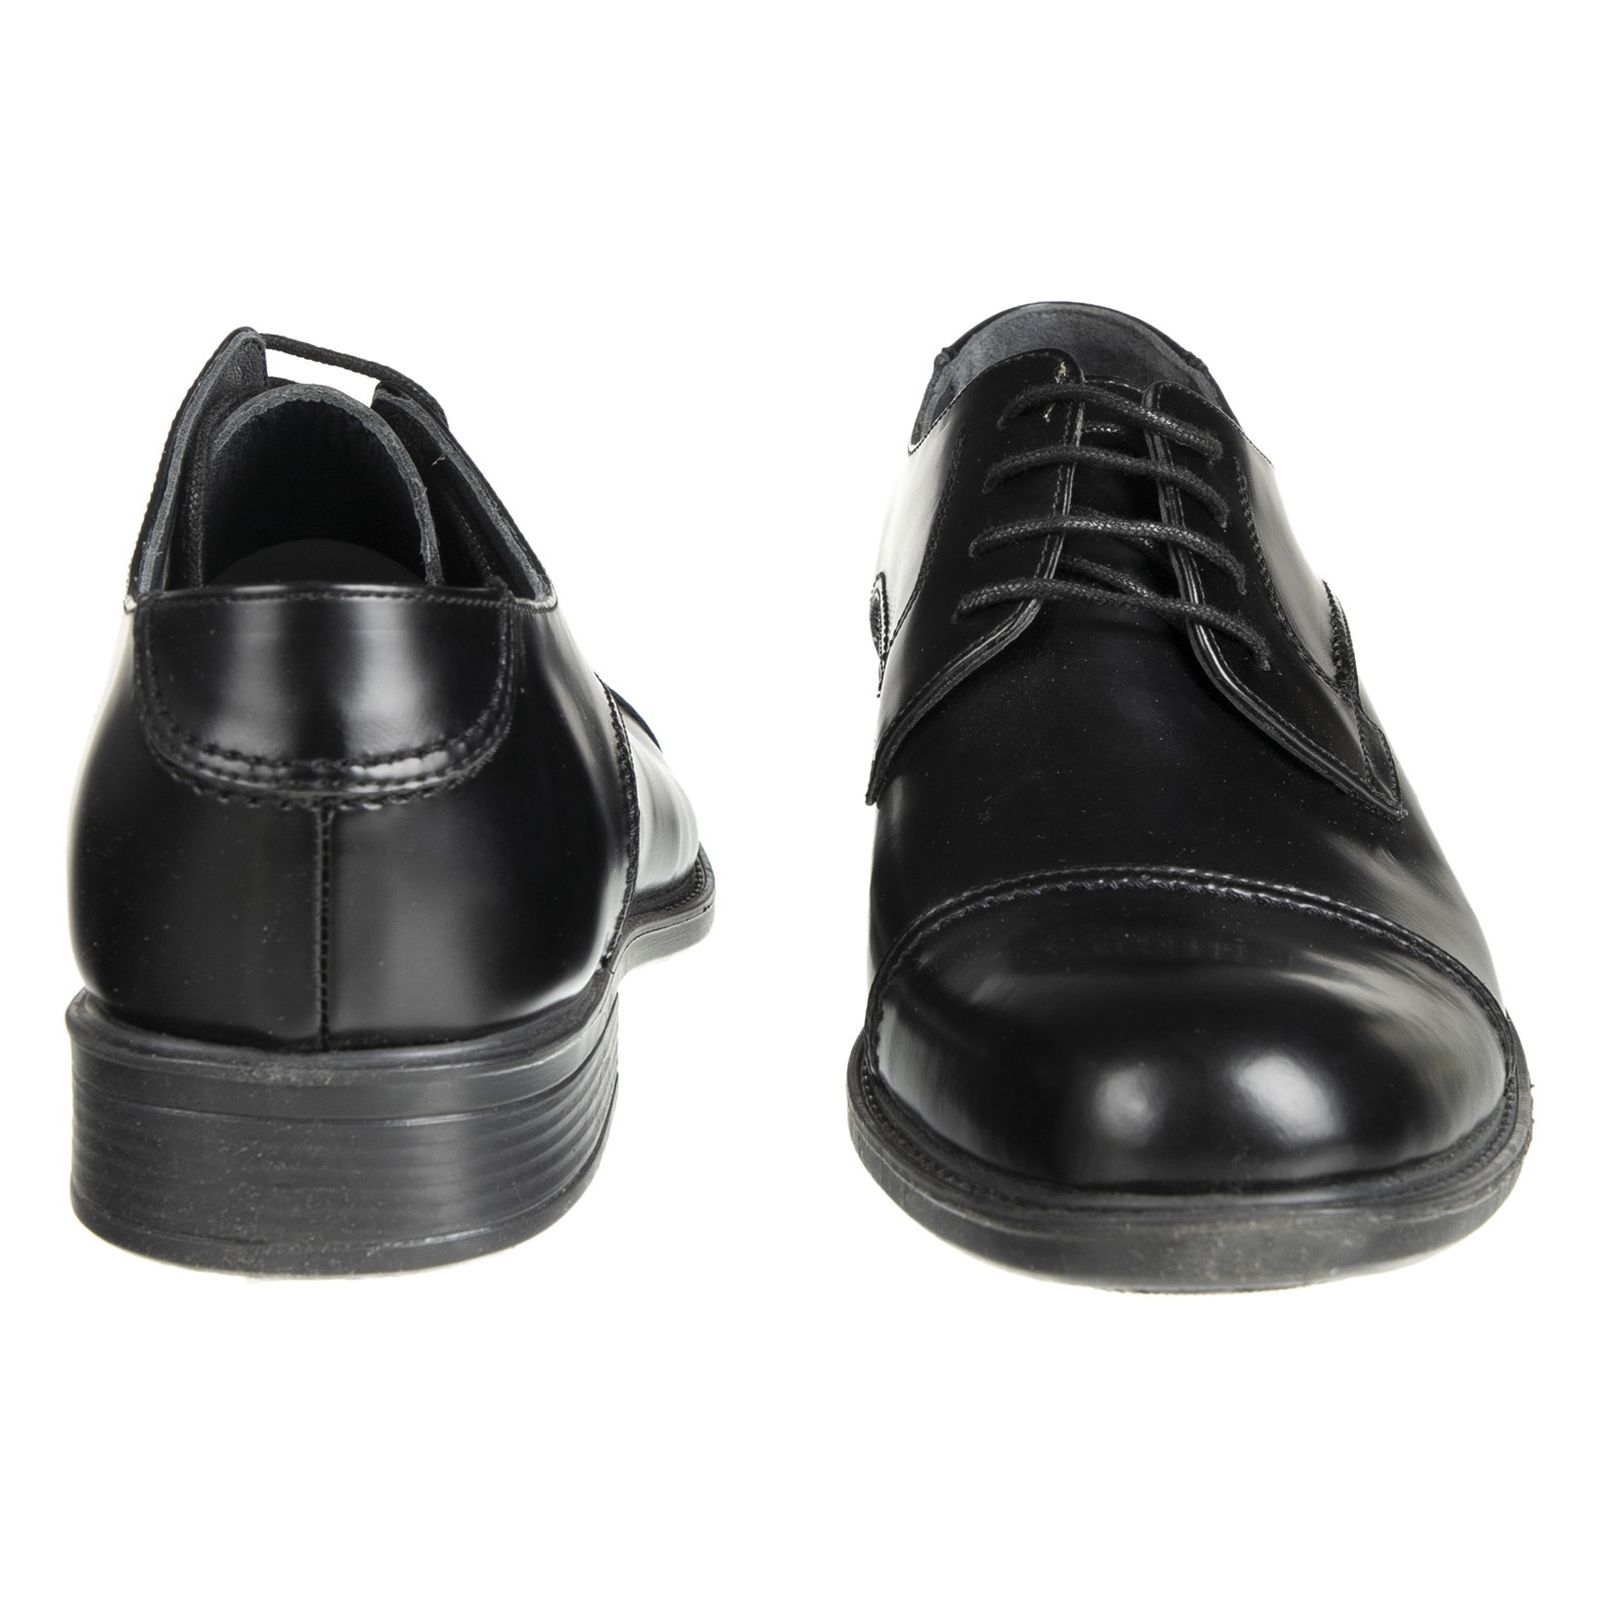 کفش مردانه دلفارد مدل 7219k503-101 - مشکی - 5